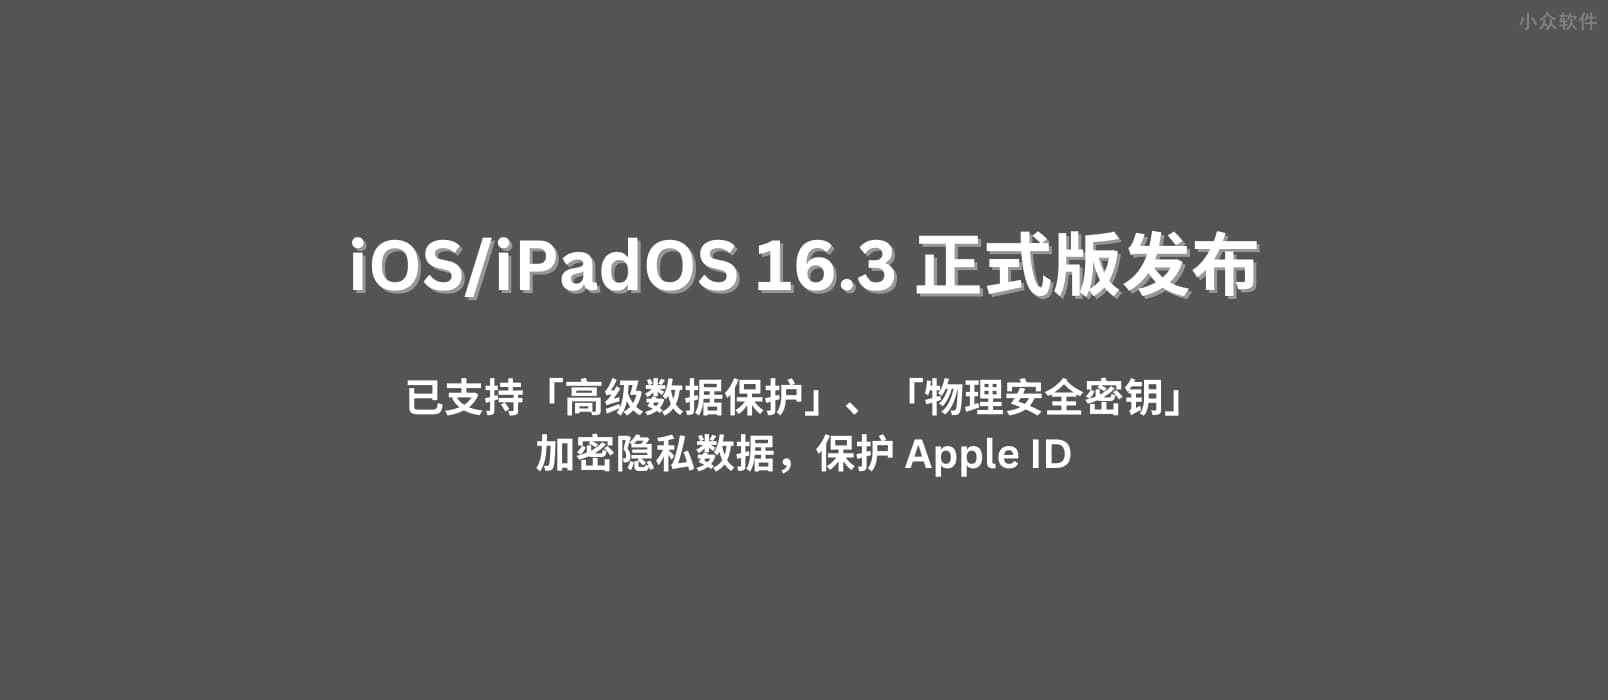 iOS/iPadOS 16.3 正式版发布，已支持「高级数据保护」「物理安全密钥」功能，加密隐私数据，保护隐私